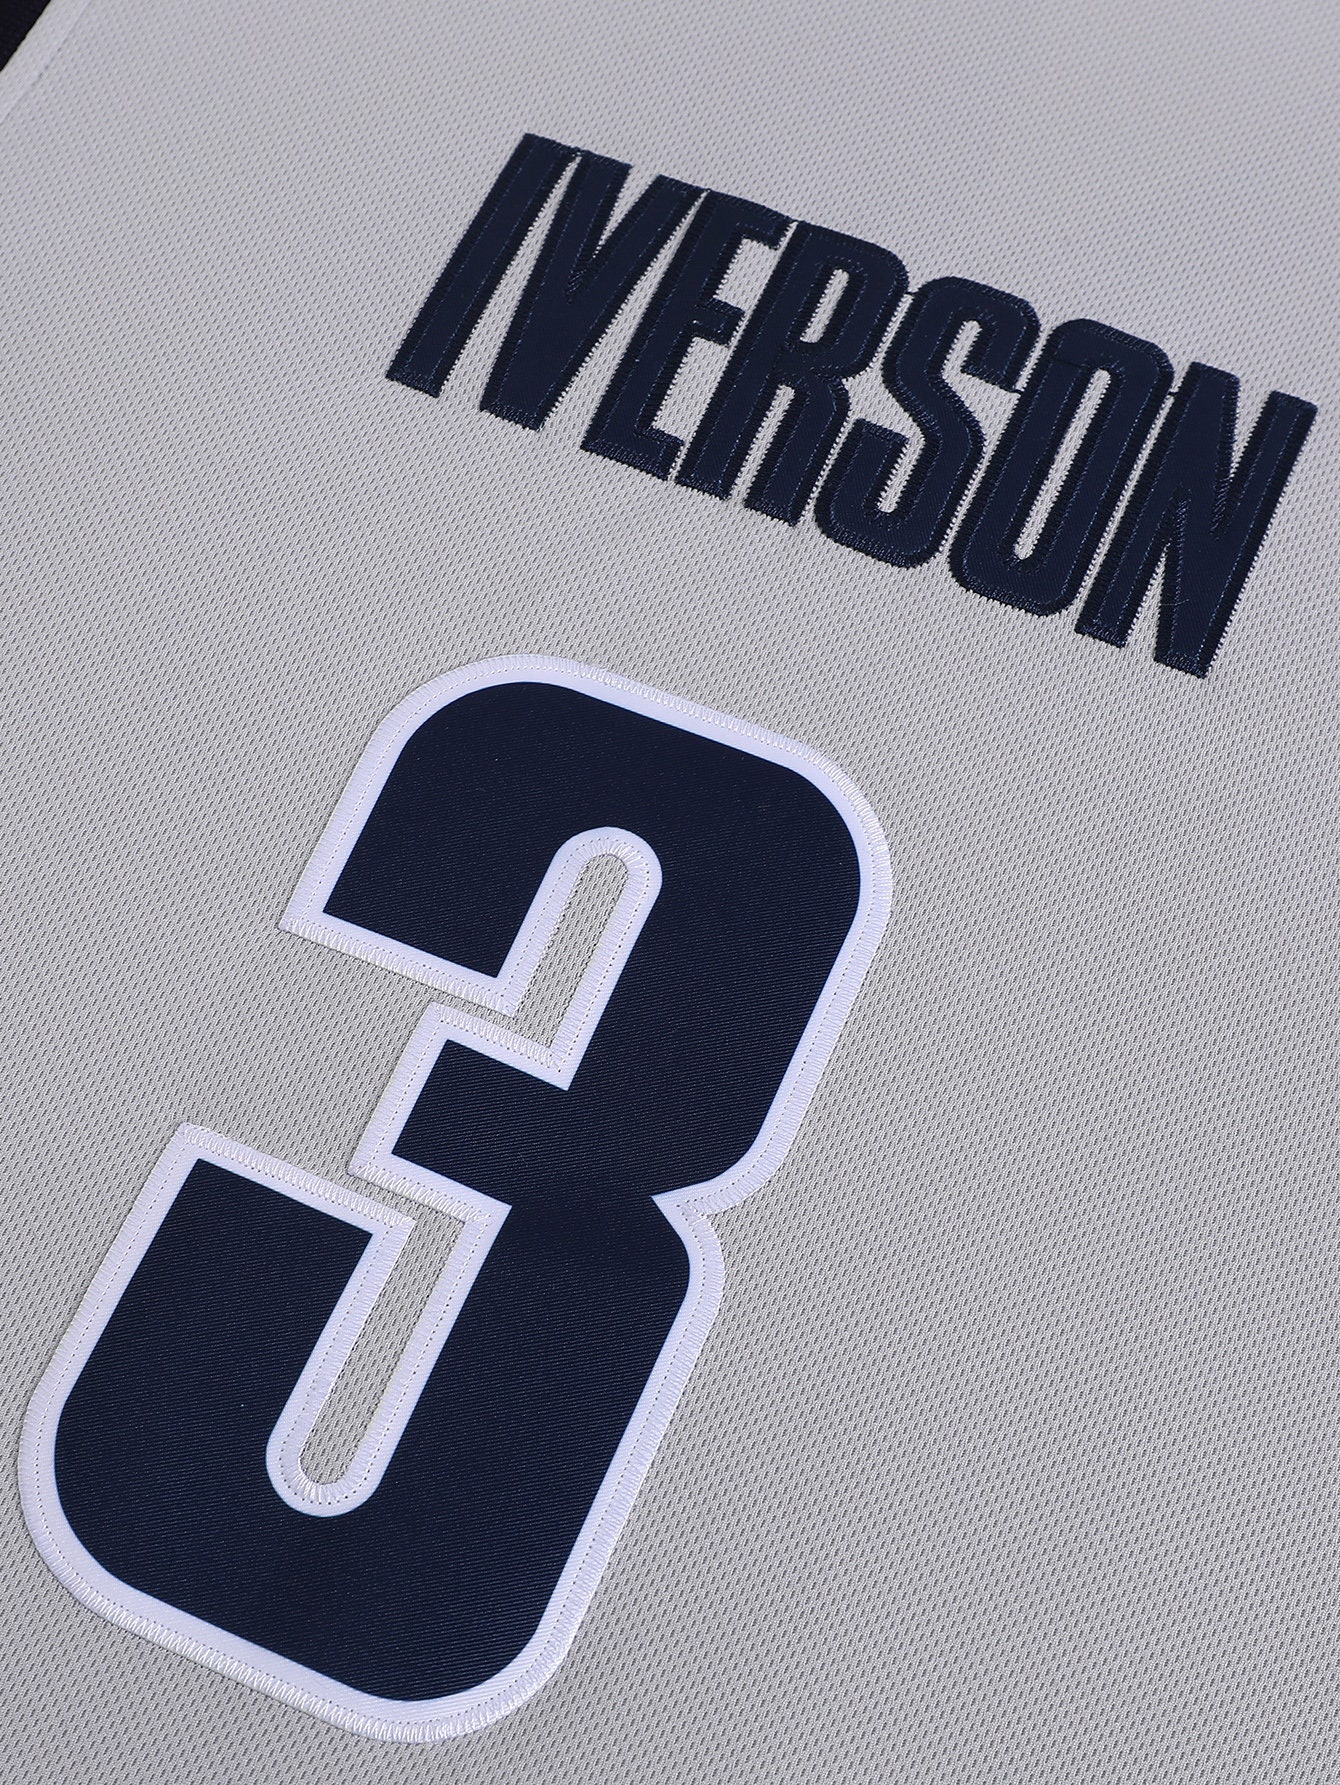 Allen Iverson Georgetown Basketball Jersey College